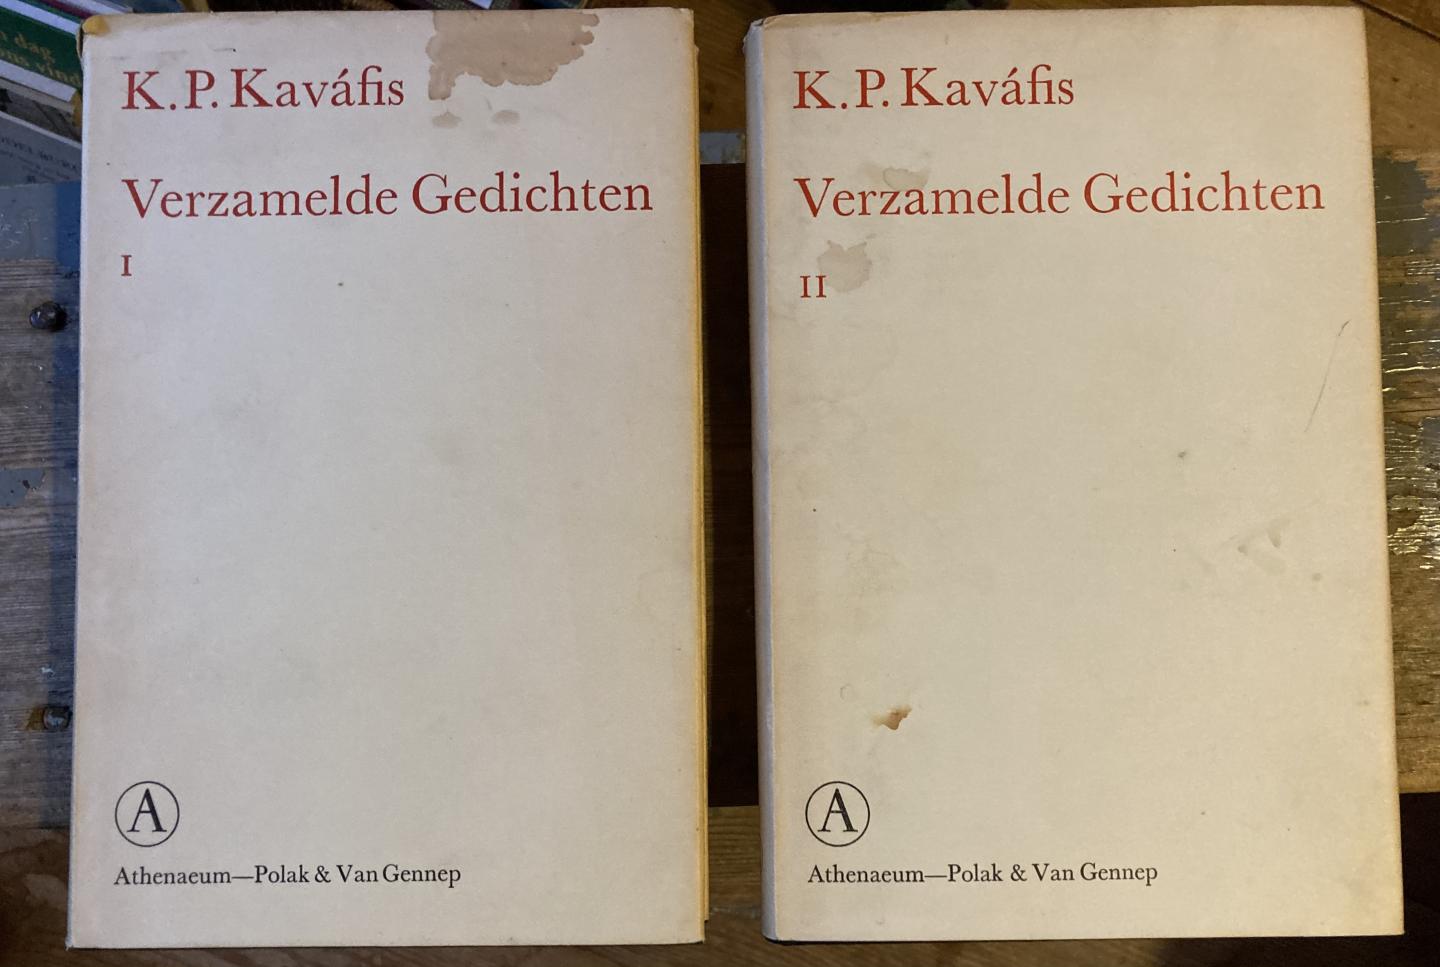 Kaváfis K.P. - Verzamelde gedichten deel 1 en 2